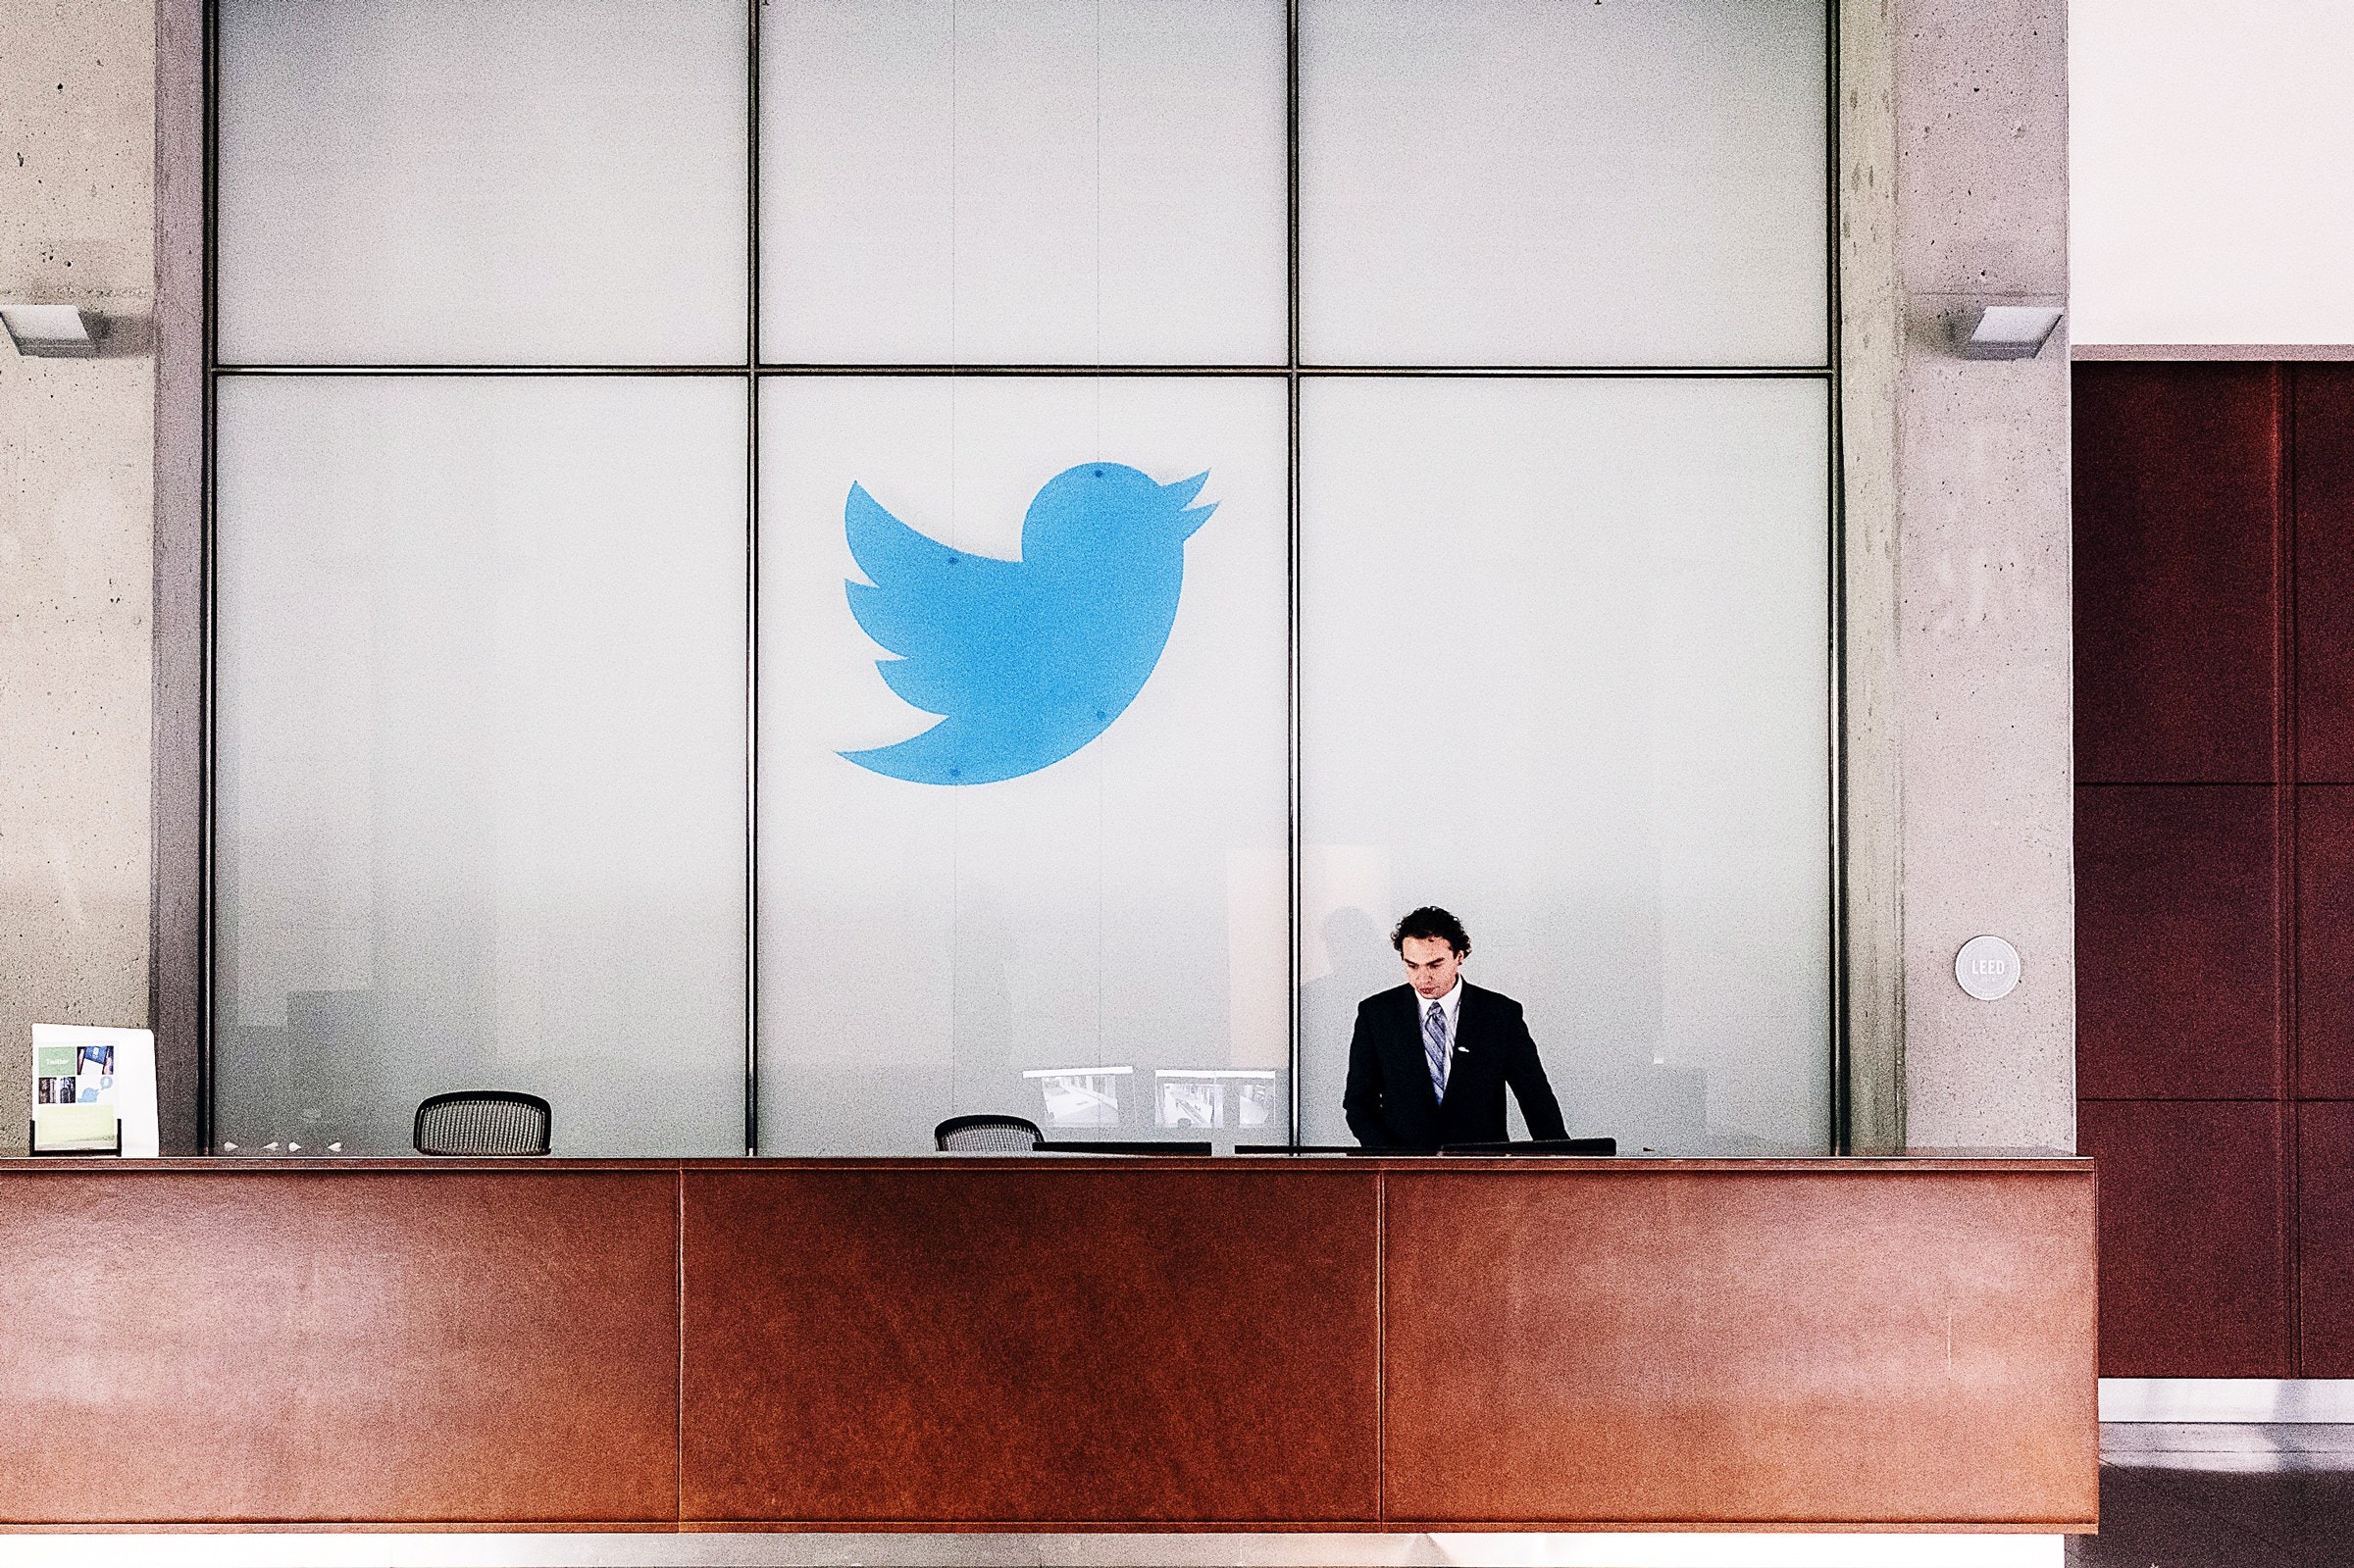 Cegah Virus Corona, 4.900 Karyawan Twitter Diwajibkan Bekerja dari Rumah